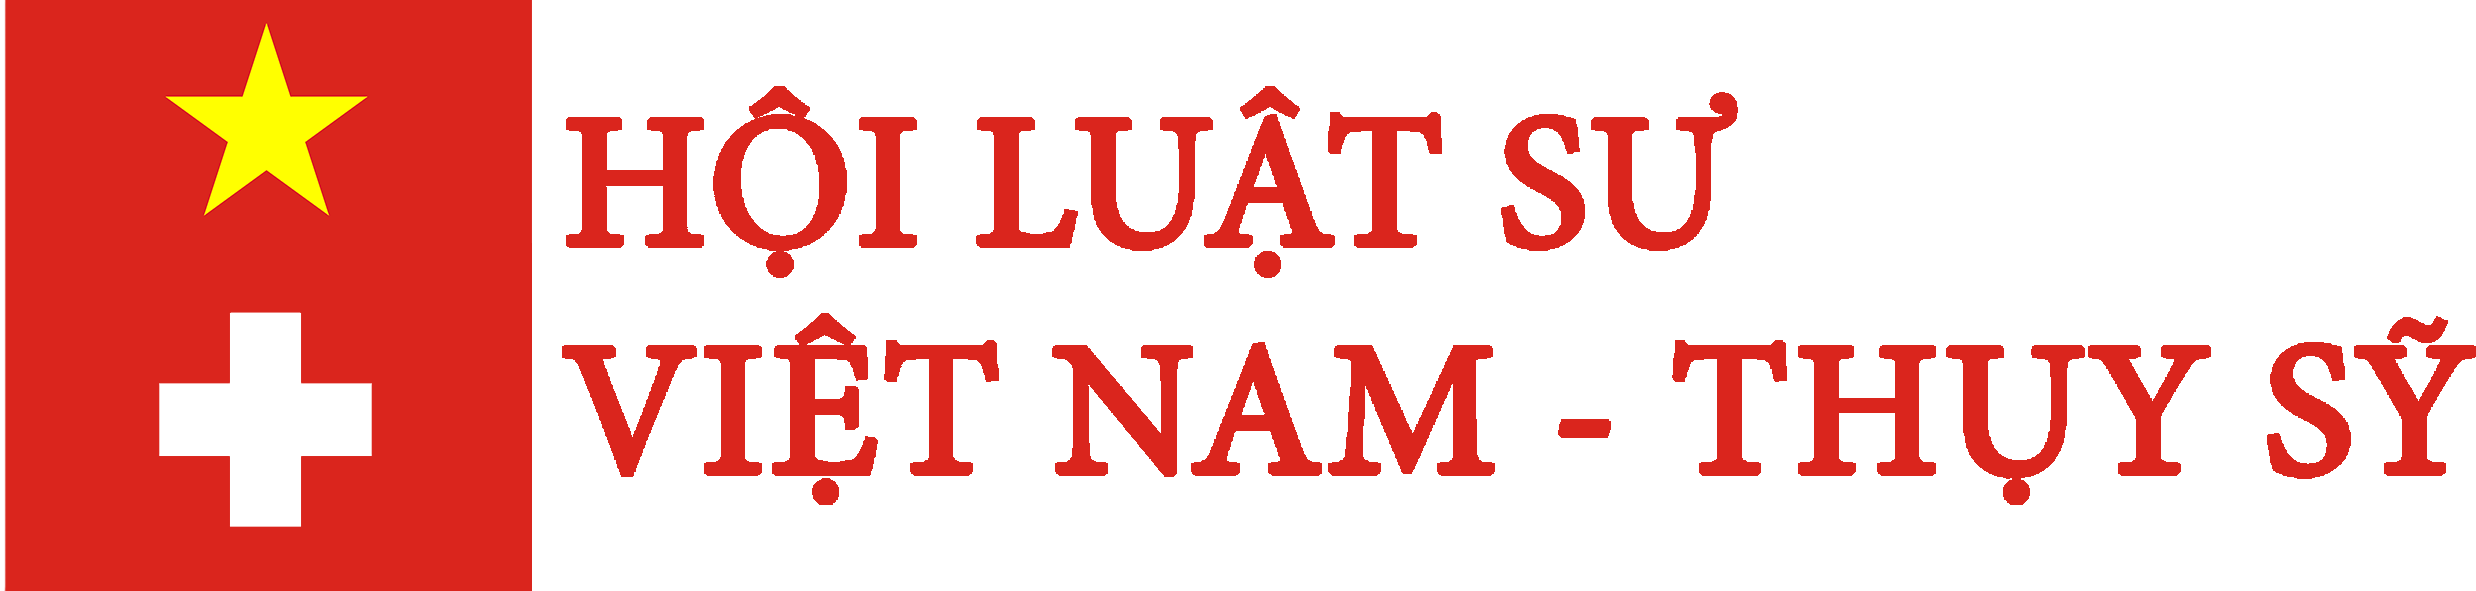 Hội luật sư Việt Nam – Thụy Sỹ